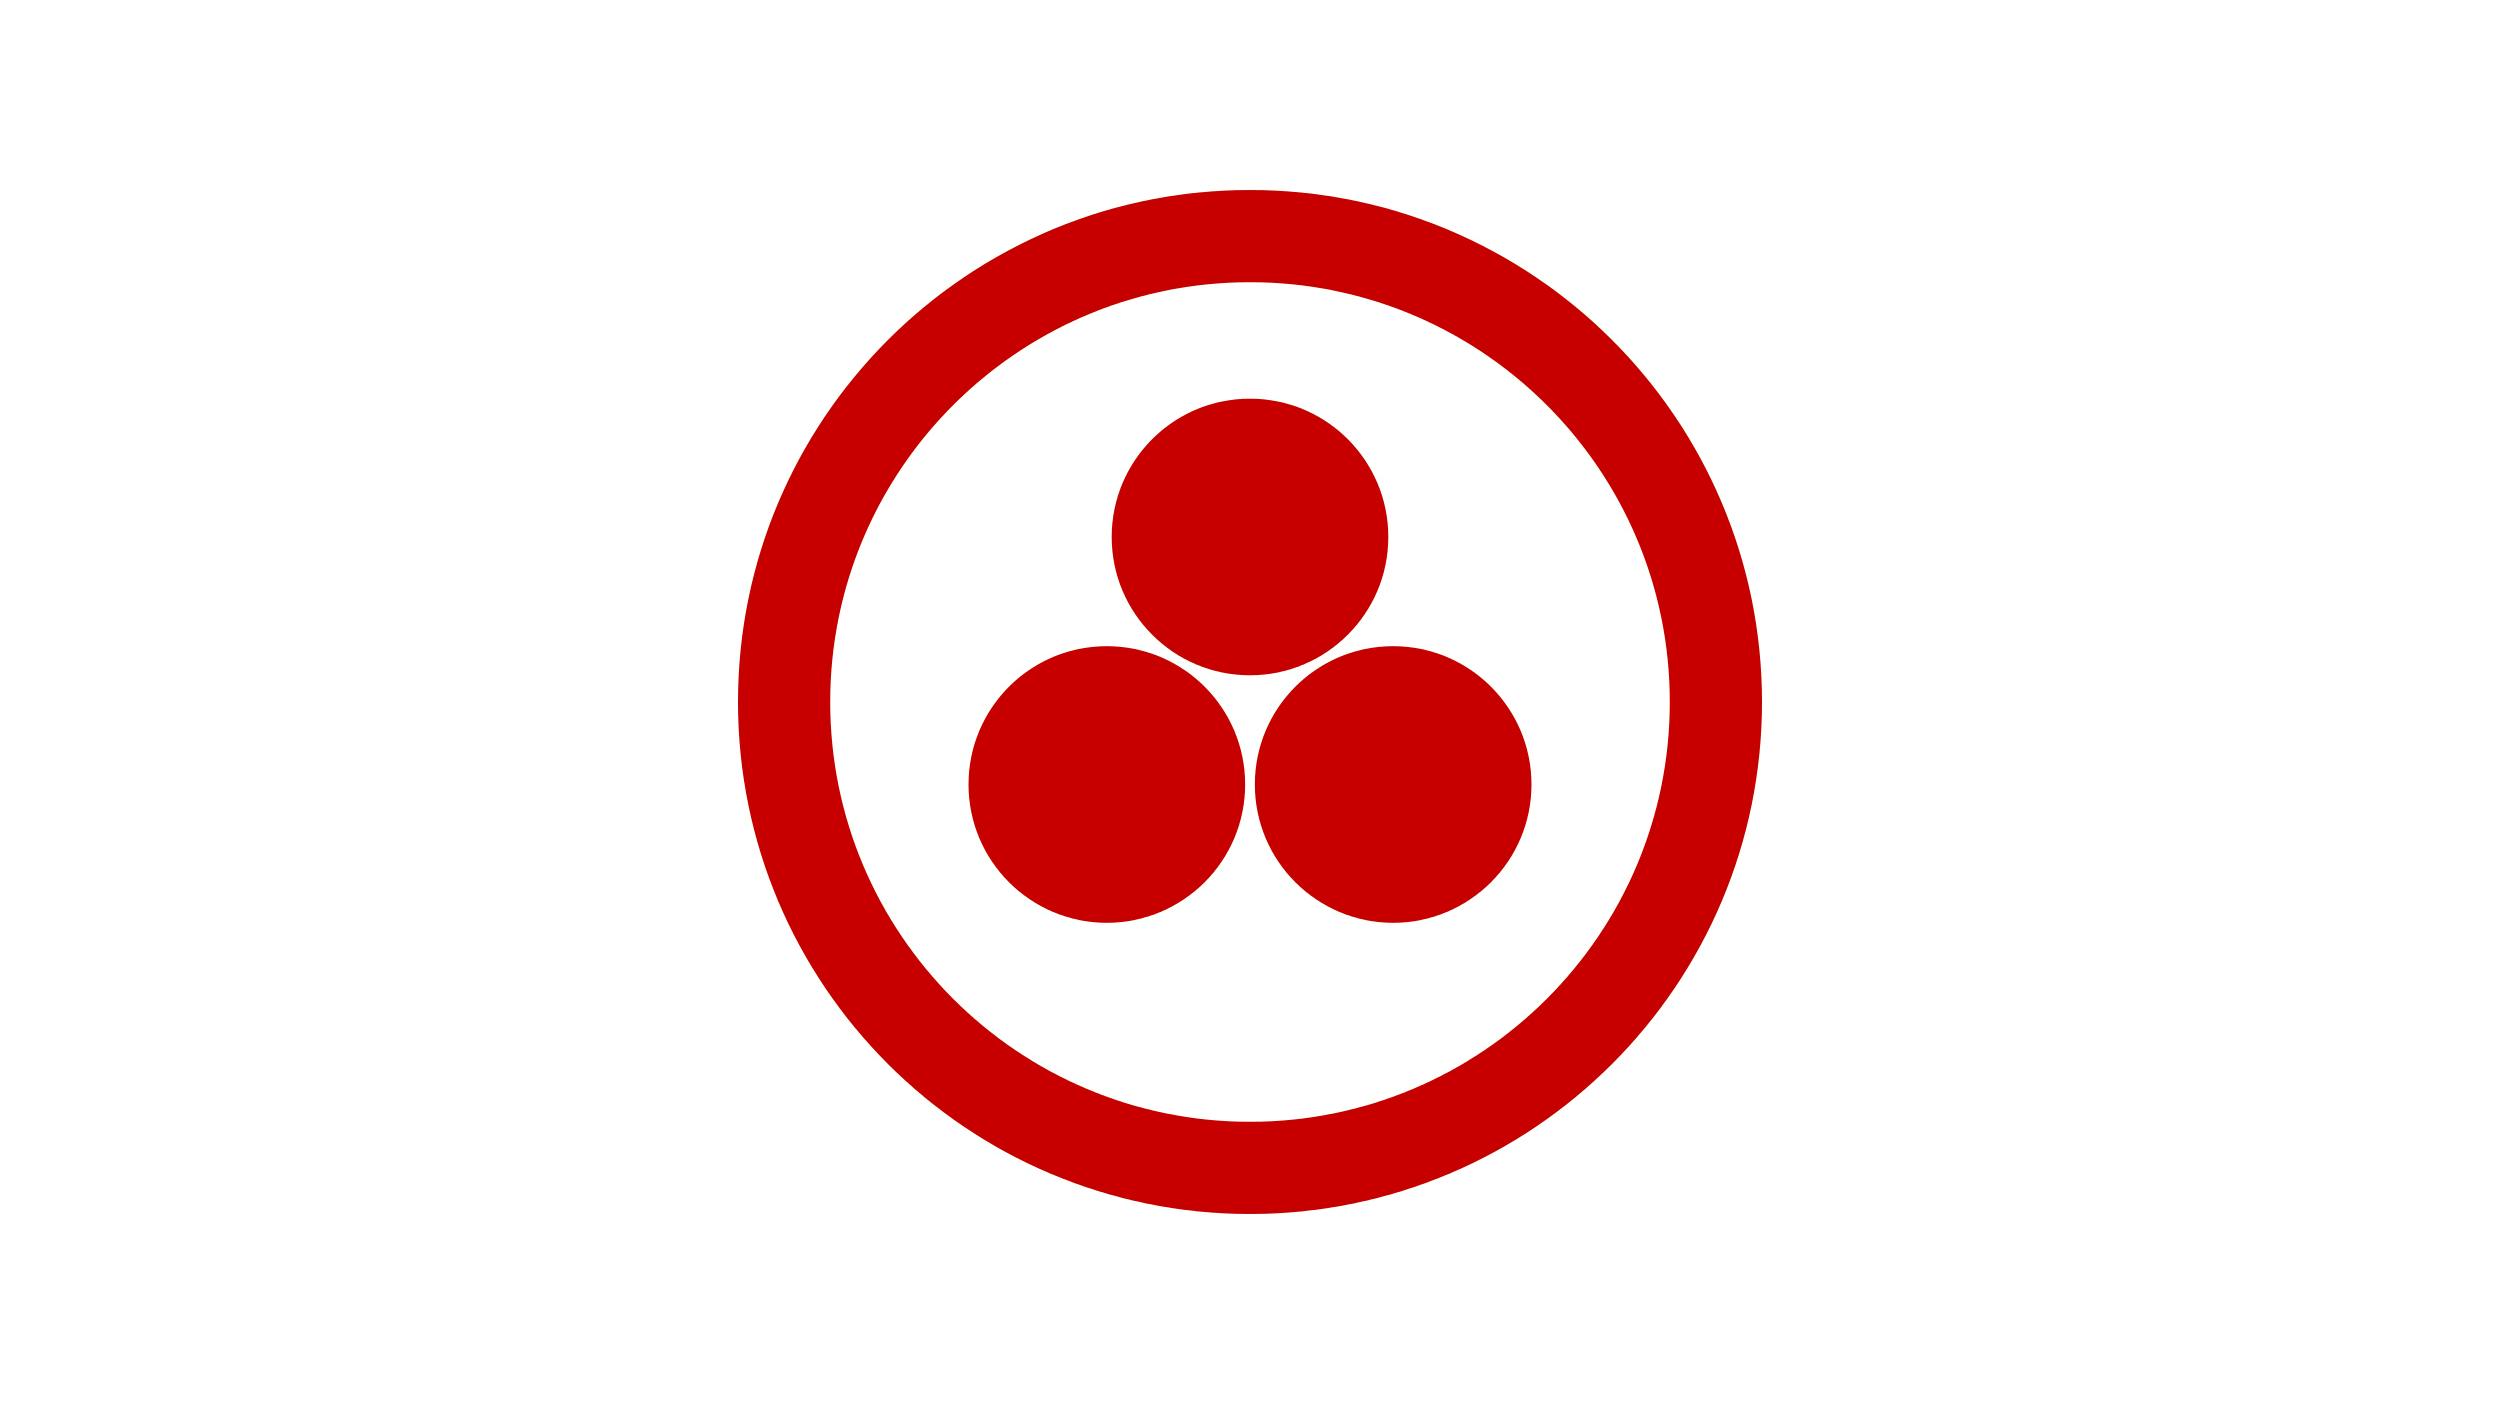 Simbolo della Bandiera della Pace disegnata da Nikolaj Konstantinovič Rerich: tre sfere di colore rosso su sfondo bianco circondate da un cerchio dello stesso colore